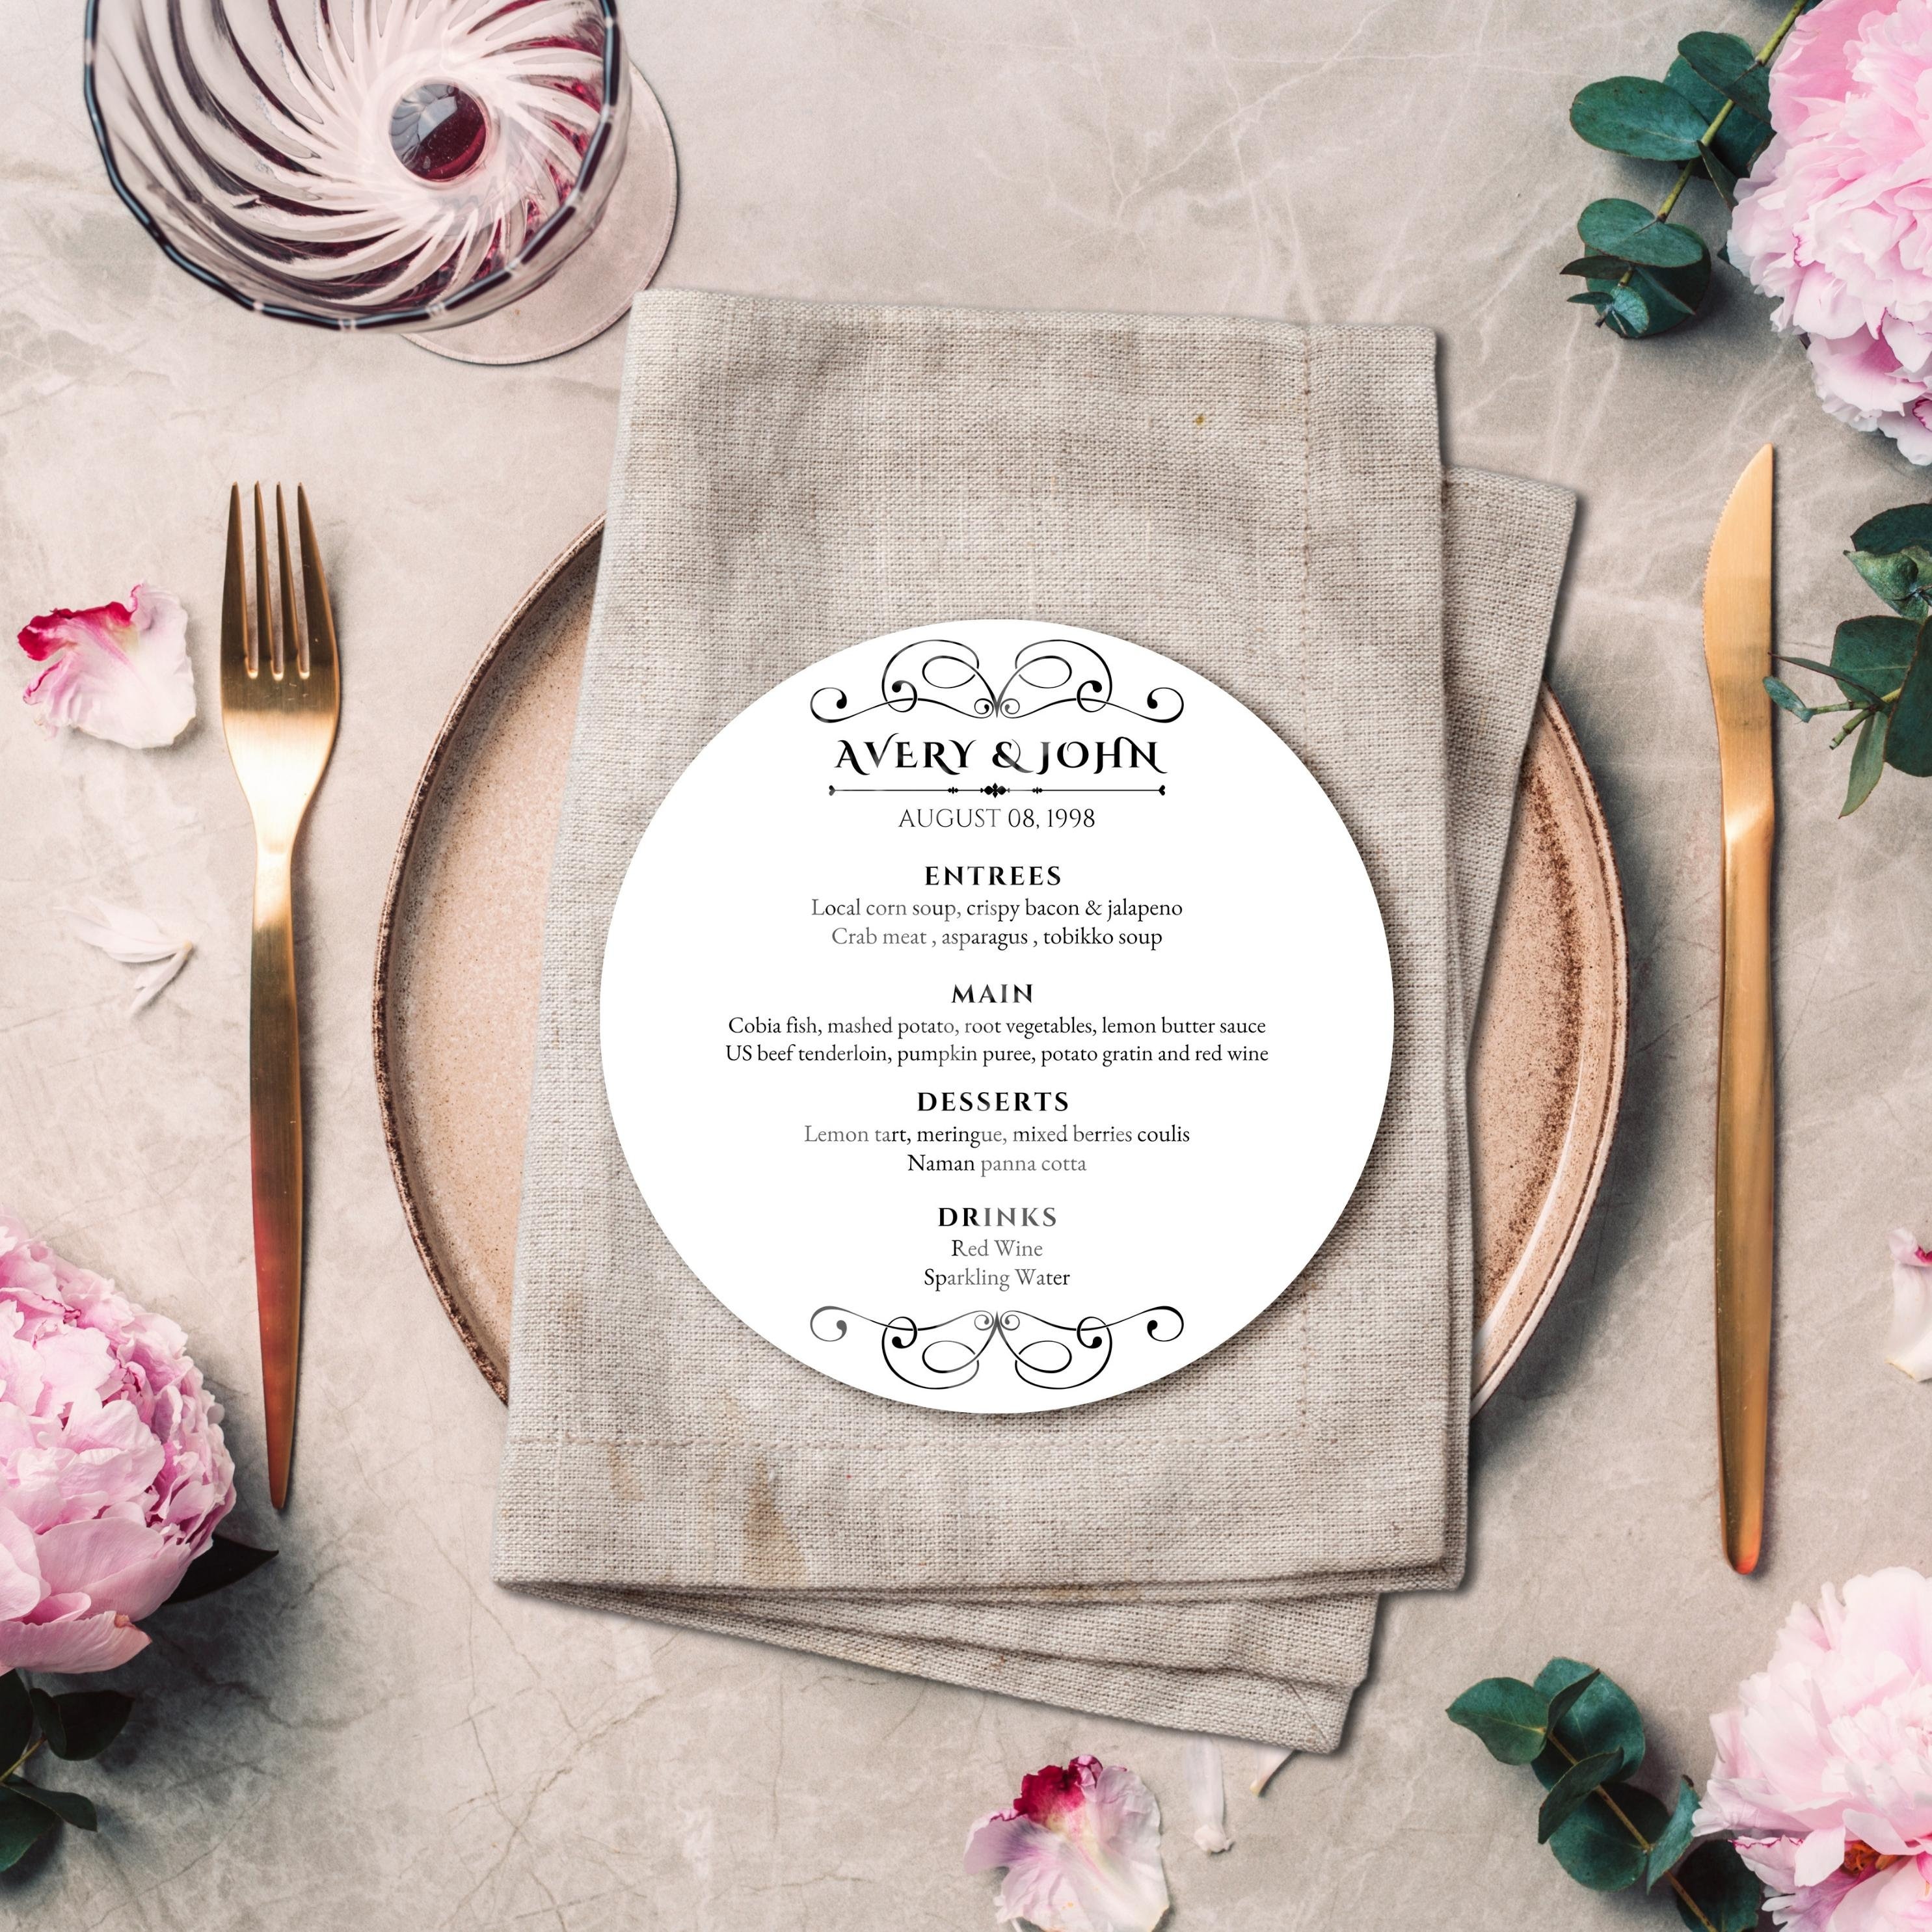 Plaque de menu de bar vierge, plaque de menu de mariage sur pied, menu de  table rond arqué acrylique transparent givré -  Canada